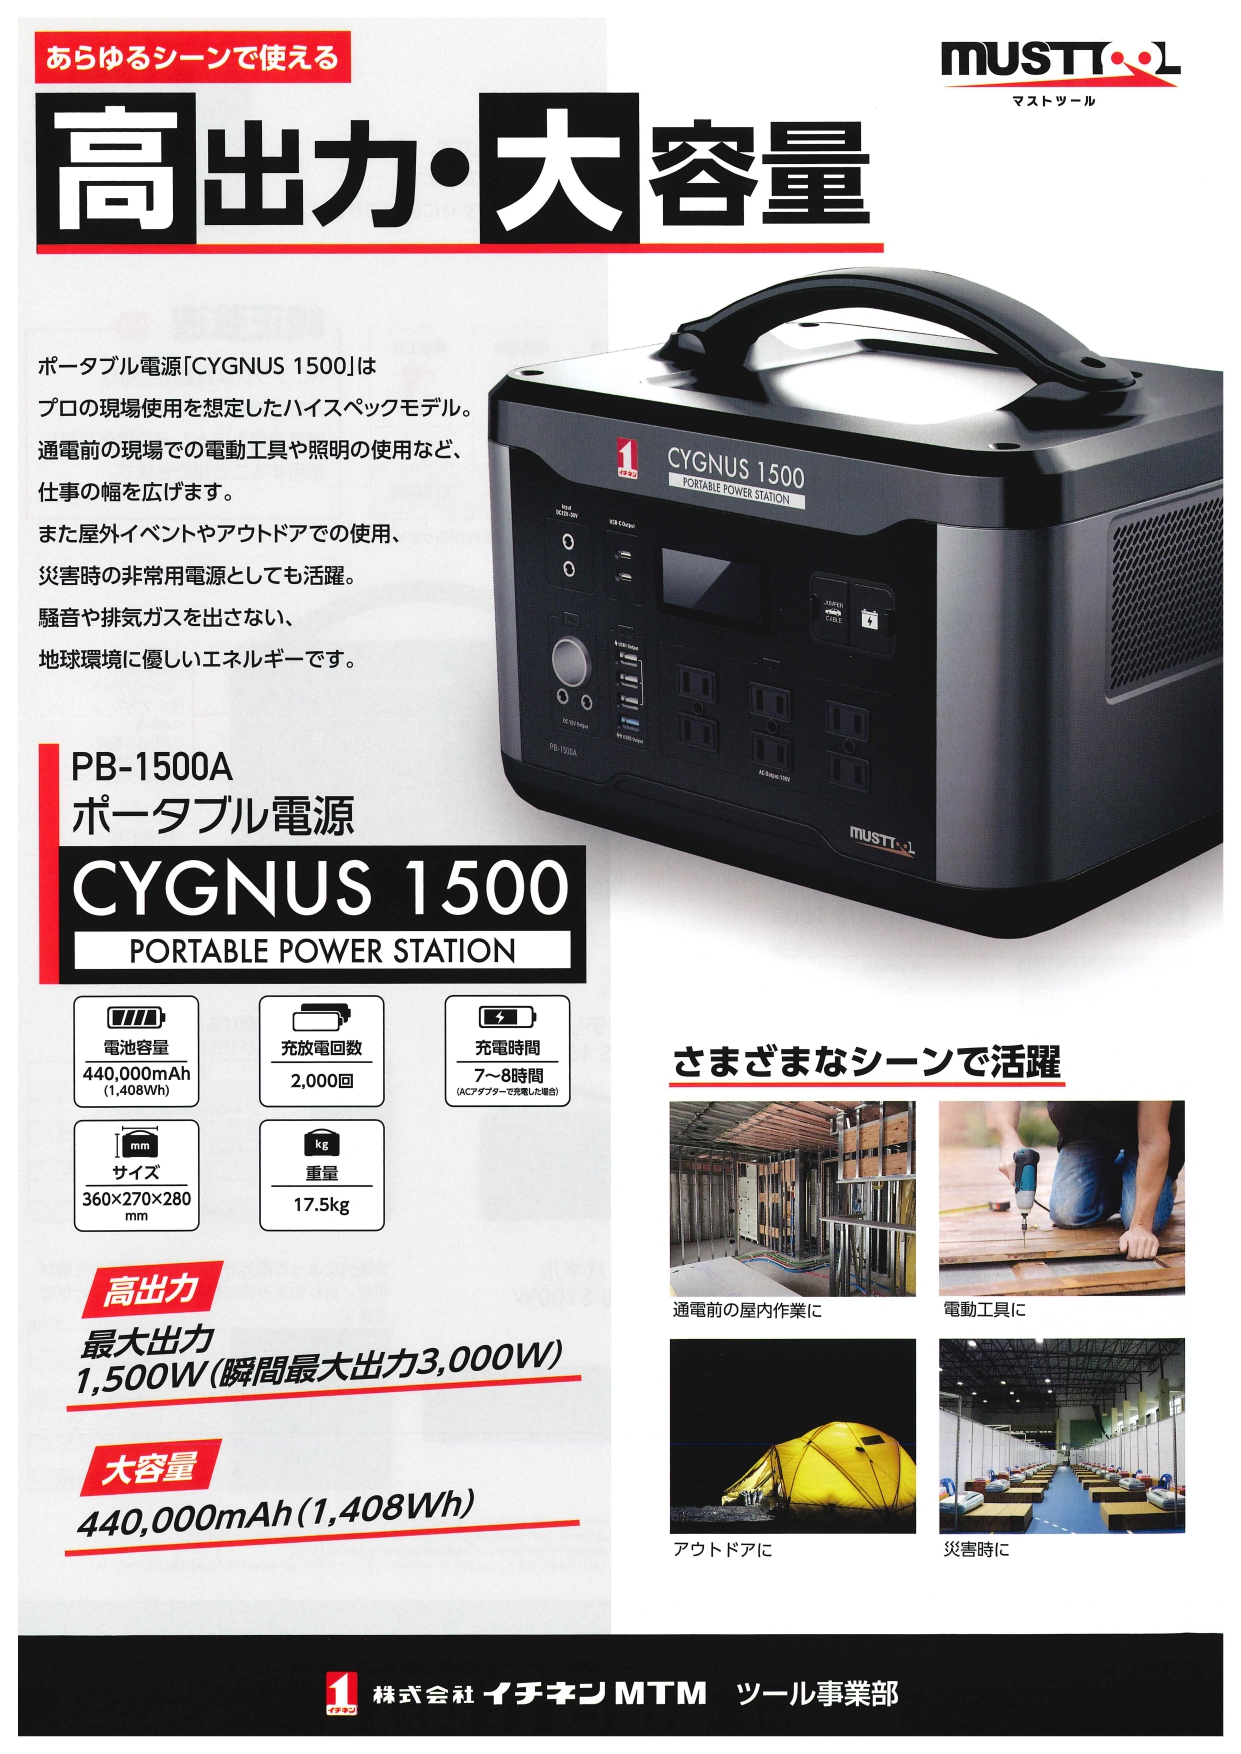 マストツール ポータブル電源 GYGNUS 1500セット 超安い販売中 www